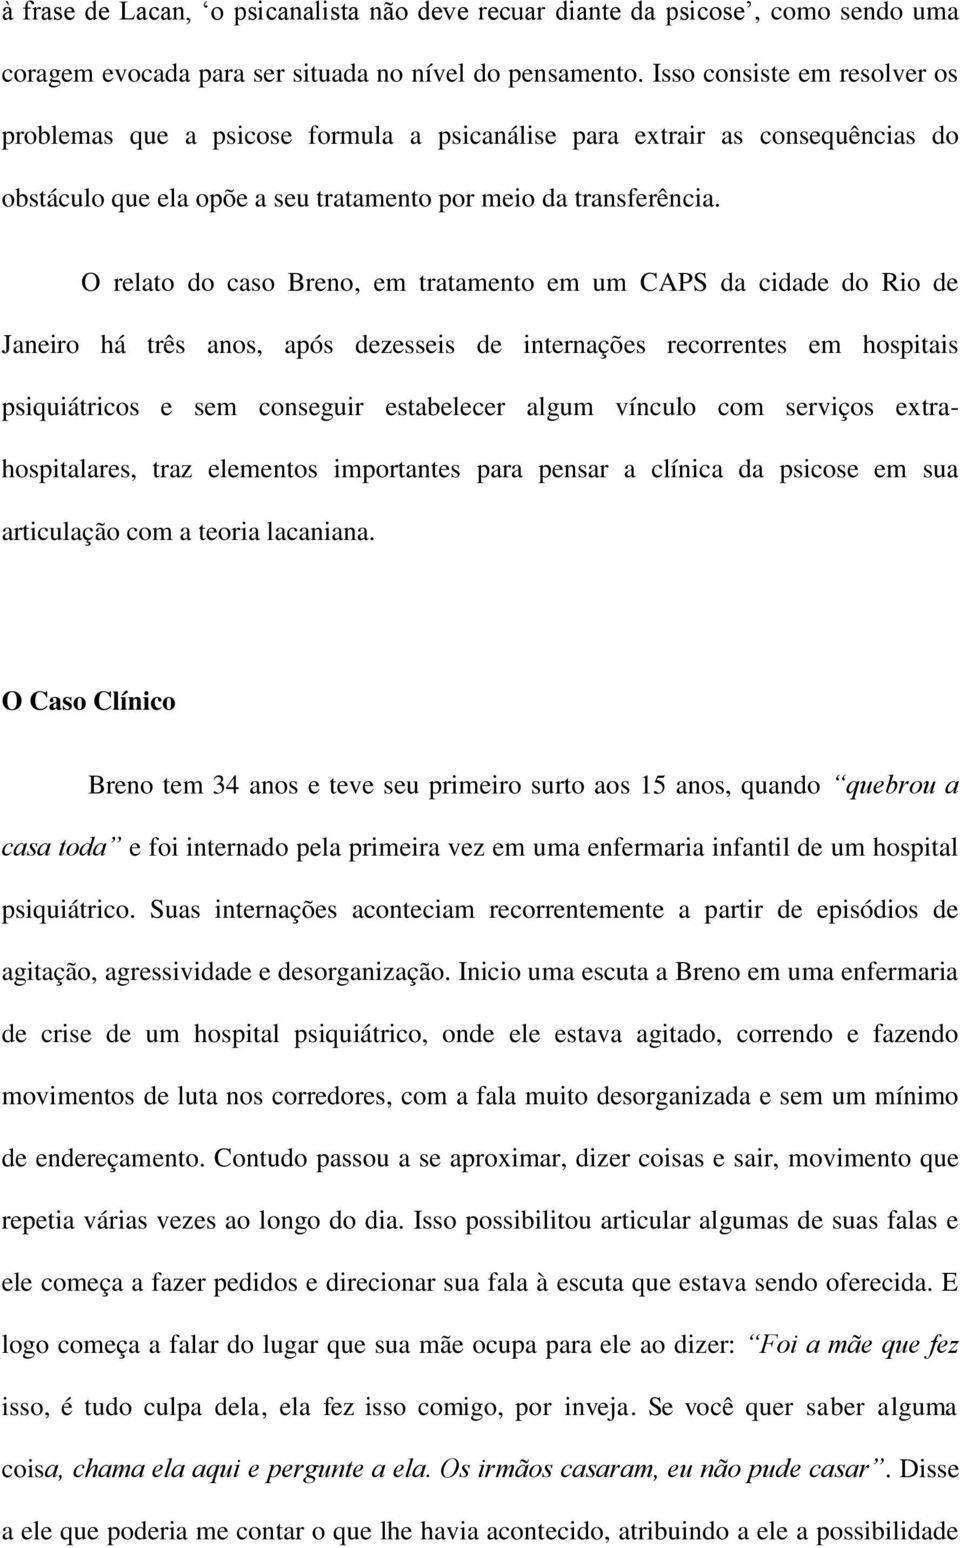 O relato do caso Breno, em tratamento em um CAPS da cidade do Rio de Janeiro há três anos, após dezesseis de internações recorrentes em hospitais psiquiátricos e sem conseguir estabelecer algum